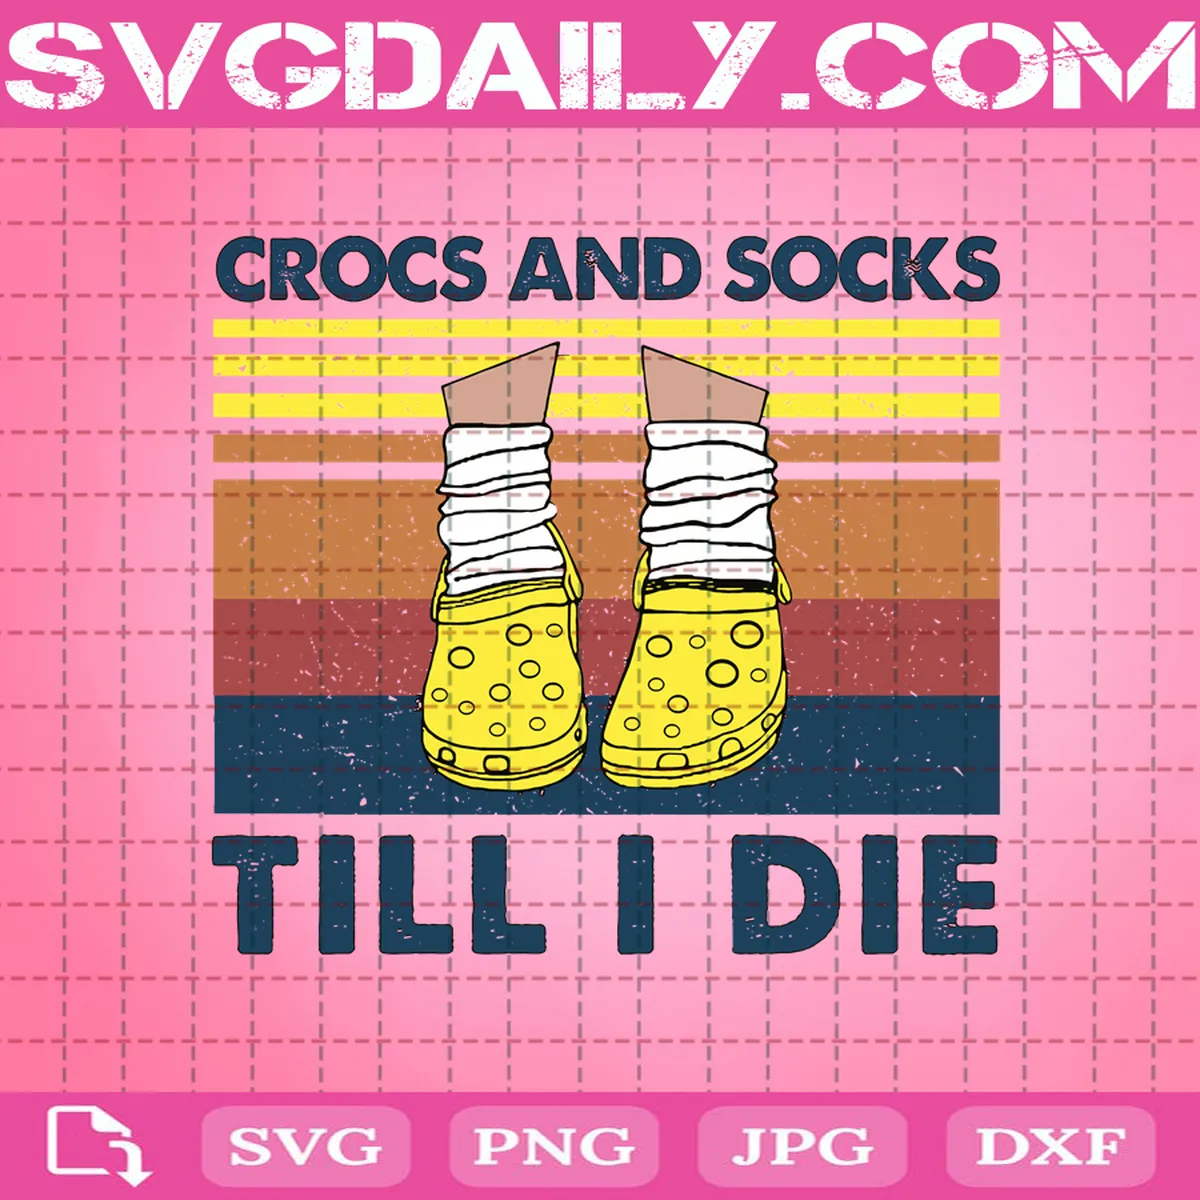 Crocs And Socks Till I Die Svg, Crocs And Socks Svg, Till I Die Svg, Croc Svg, Crocs Life Svg, Yellow Croc Svg, Crocs Lover Svg